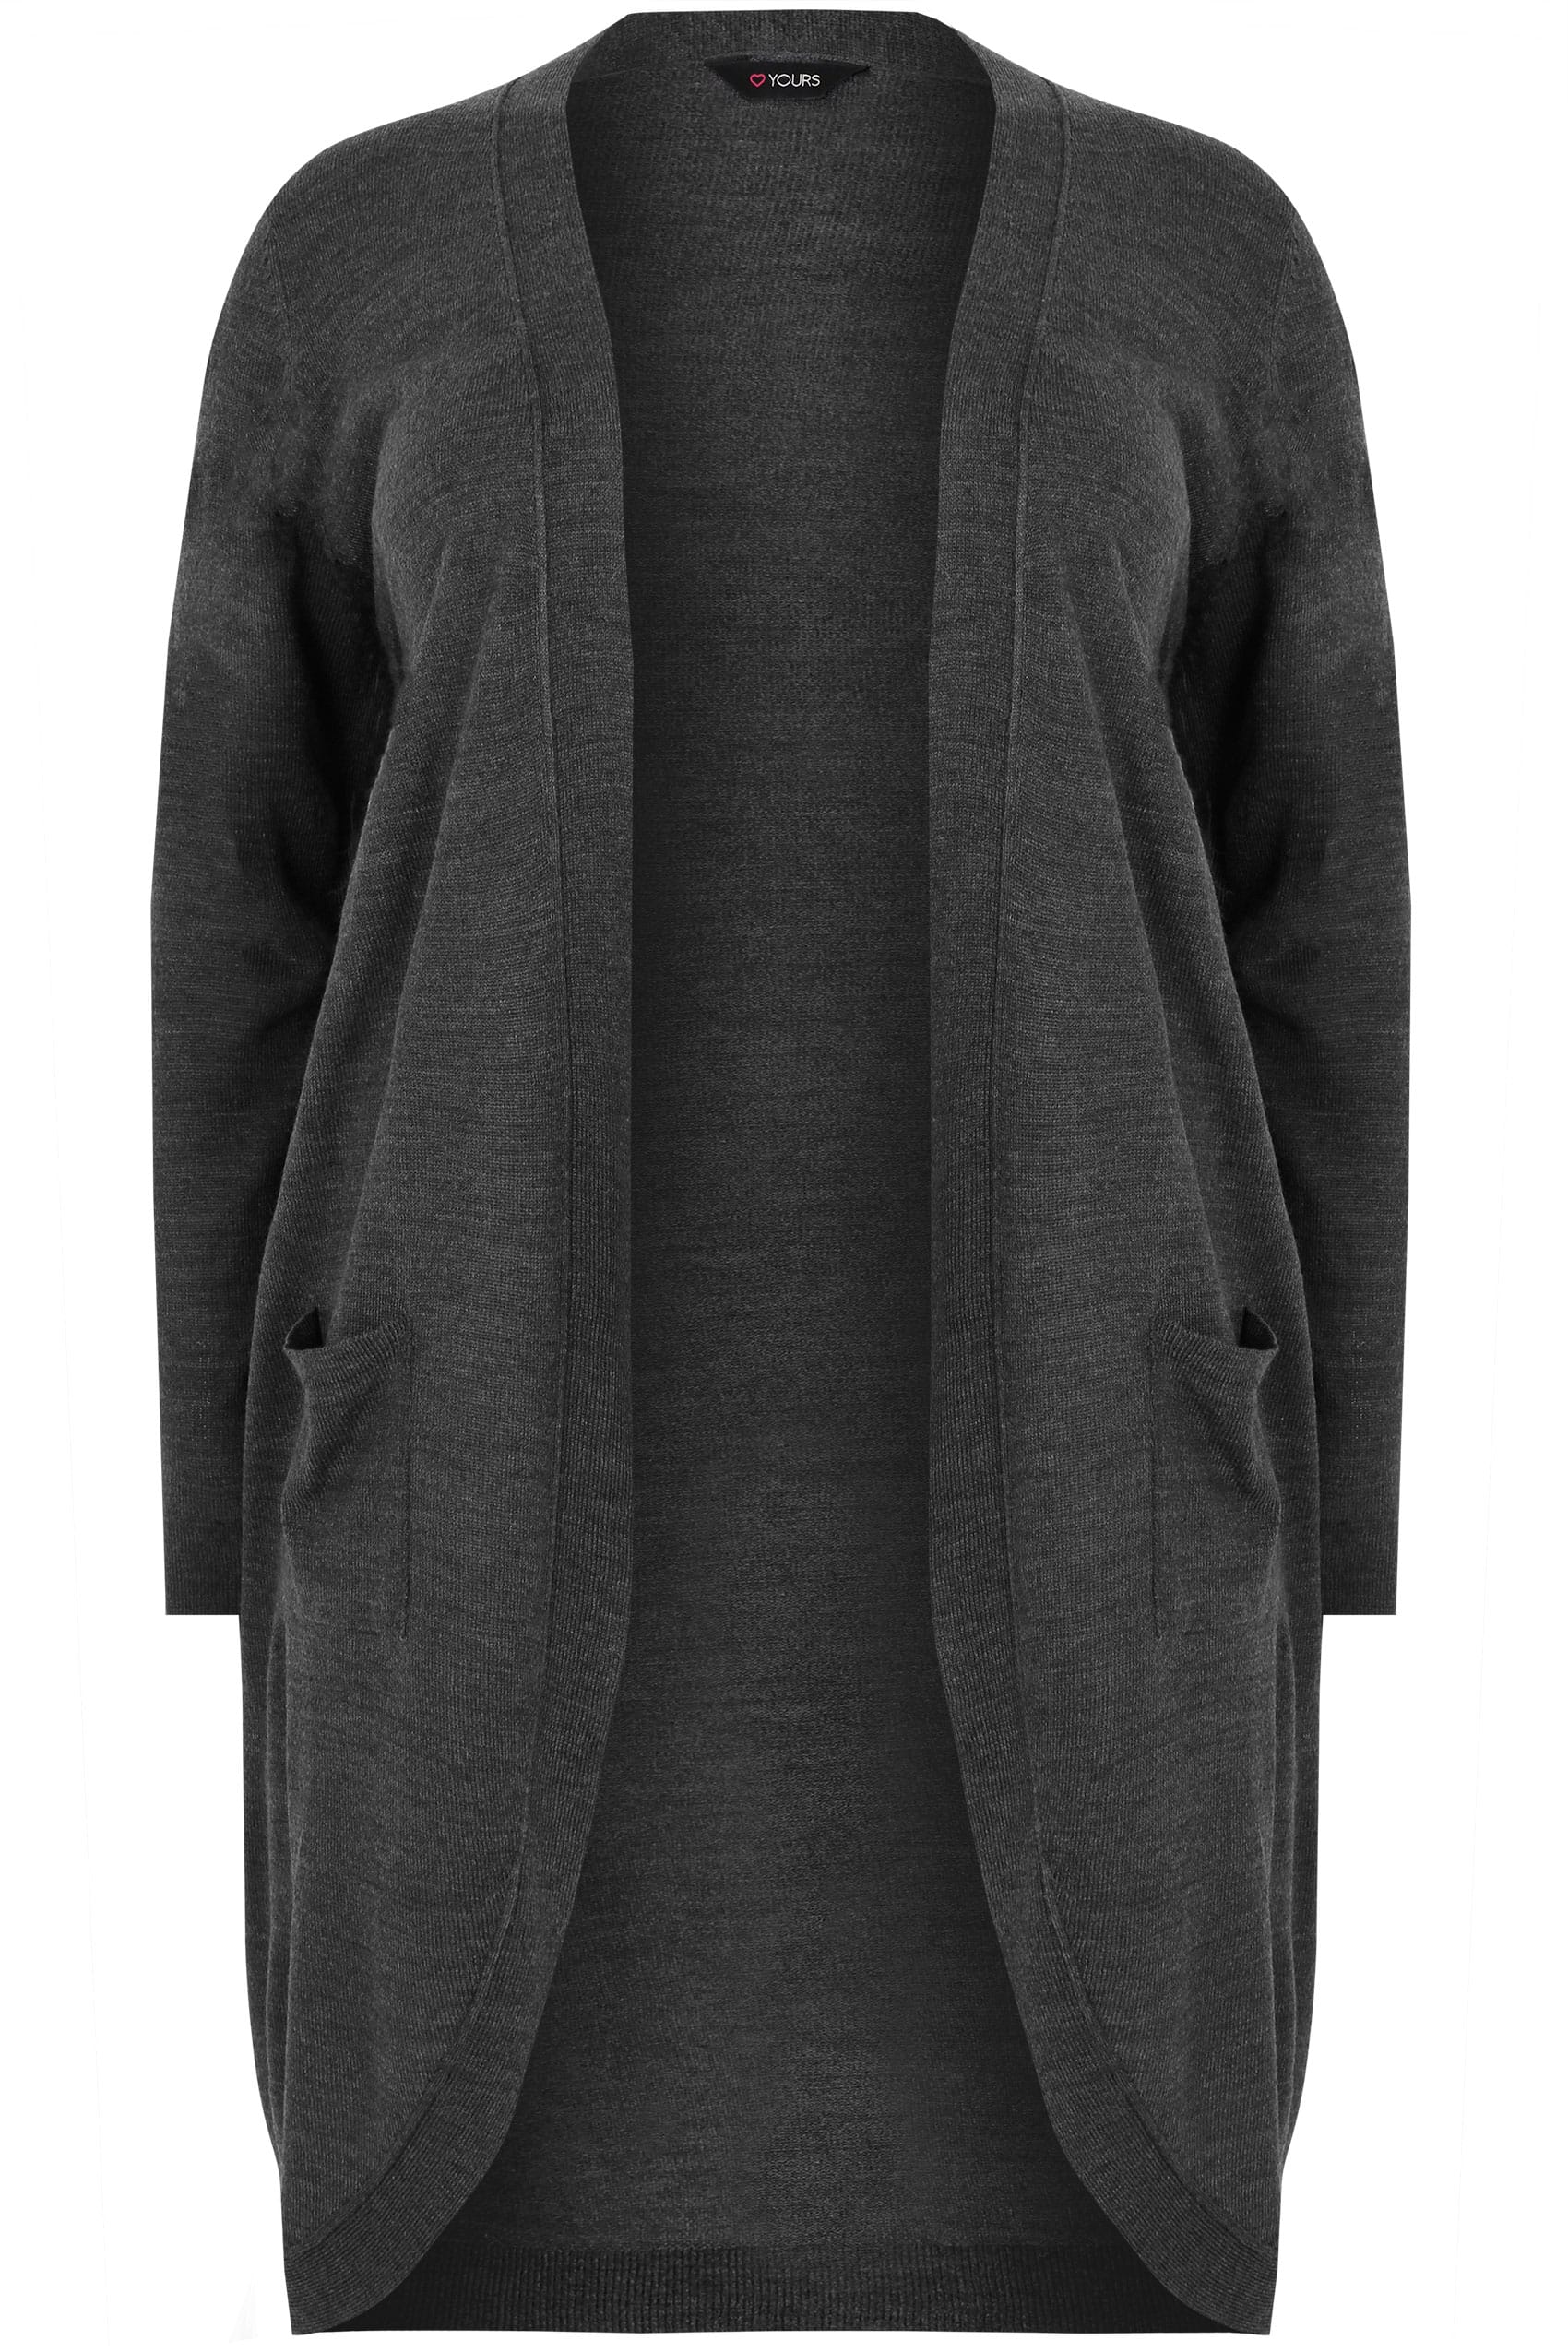 Dark Grey Longline Cardigan With Pockets, Plus size 16 to 36